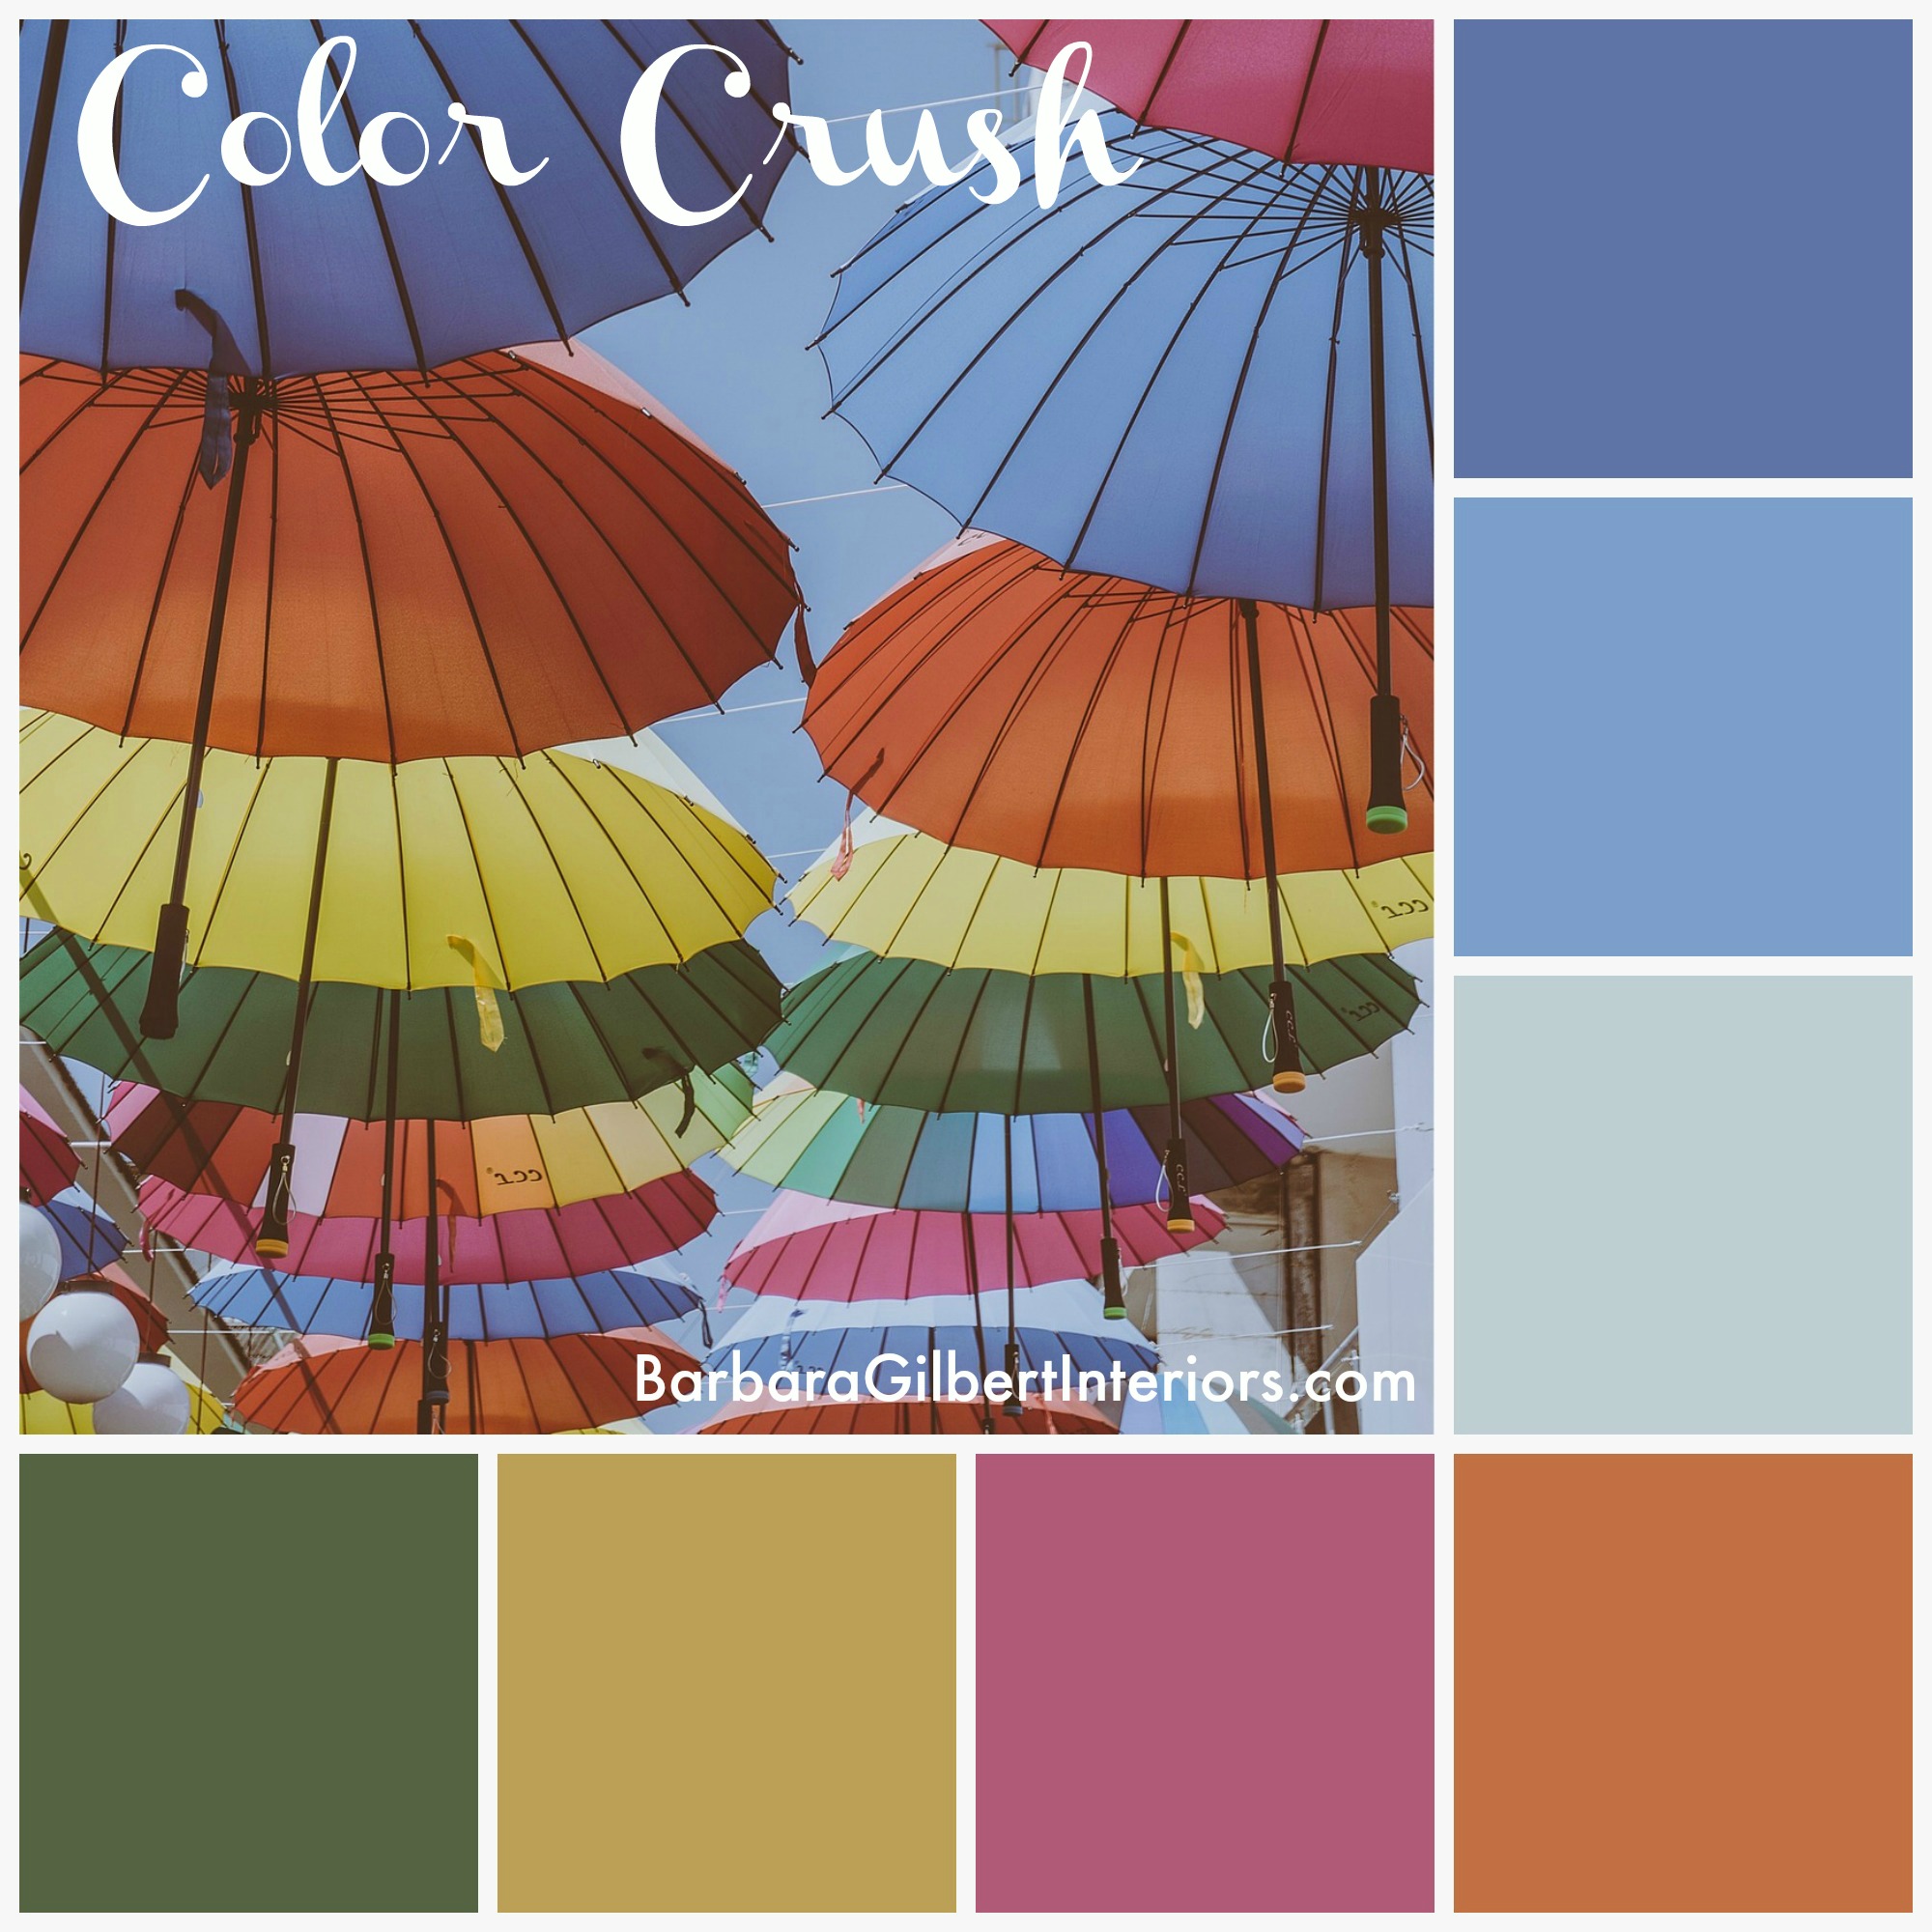 Color Crush: Bright Umbrellas | Interior Design Dallas | Barbara Gilbert Interiors